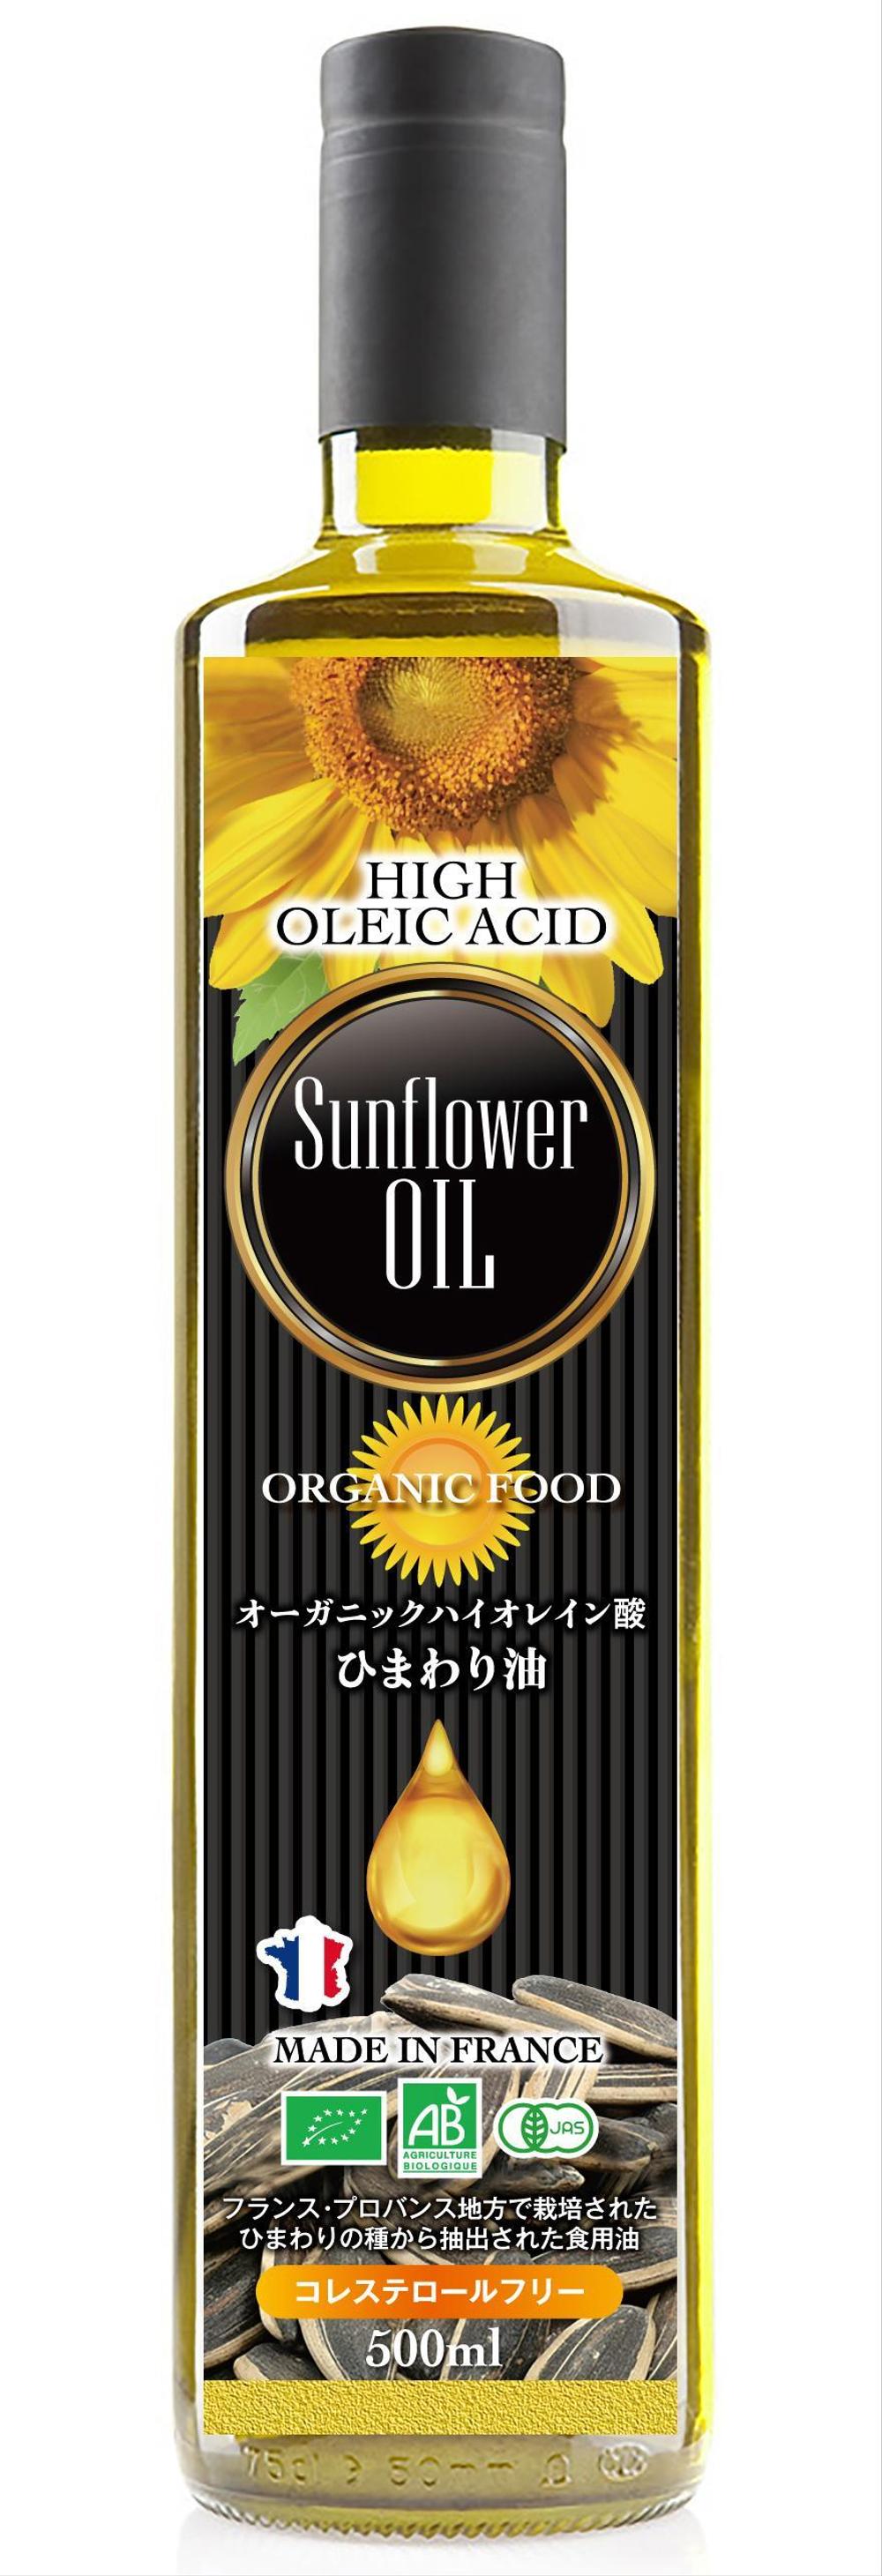 Sunflower Oil_C.jpg